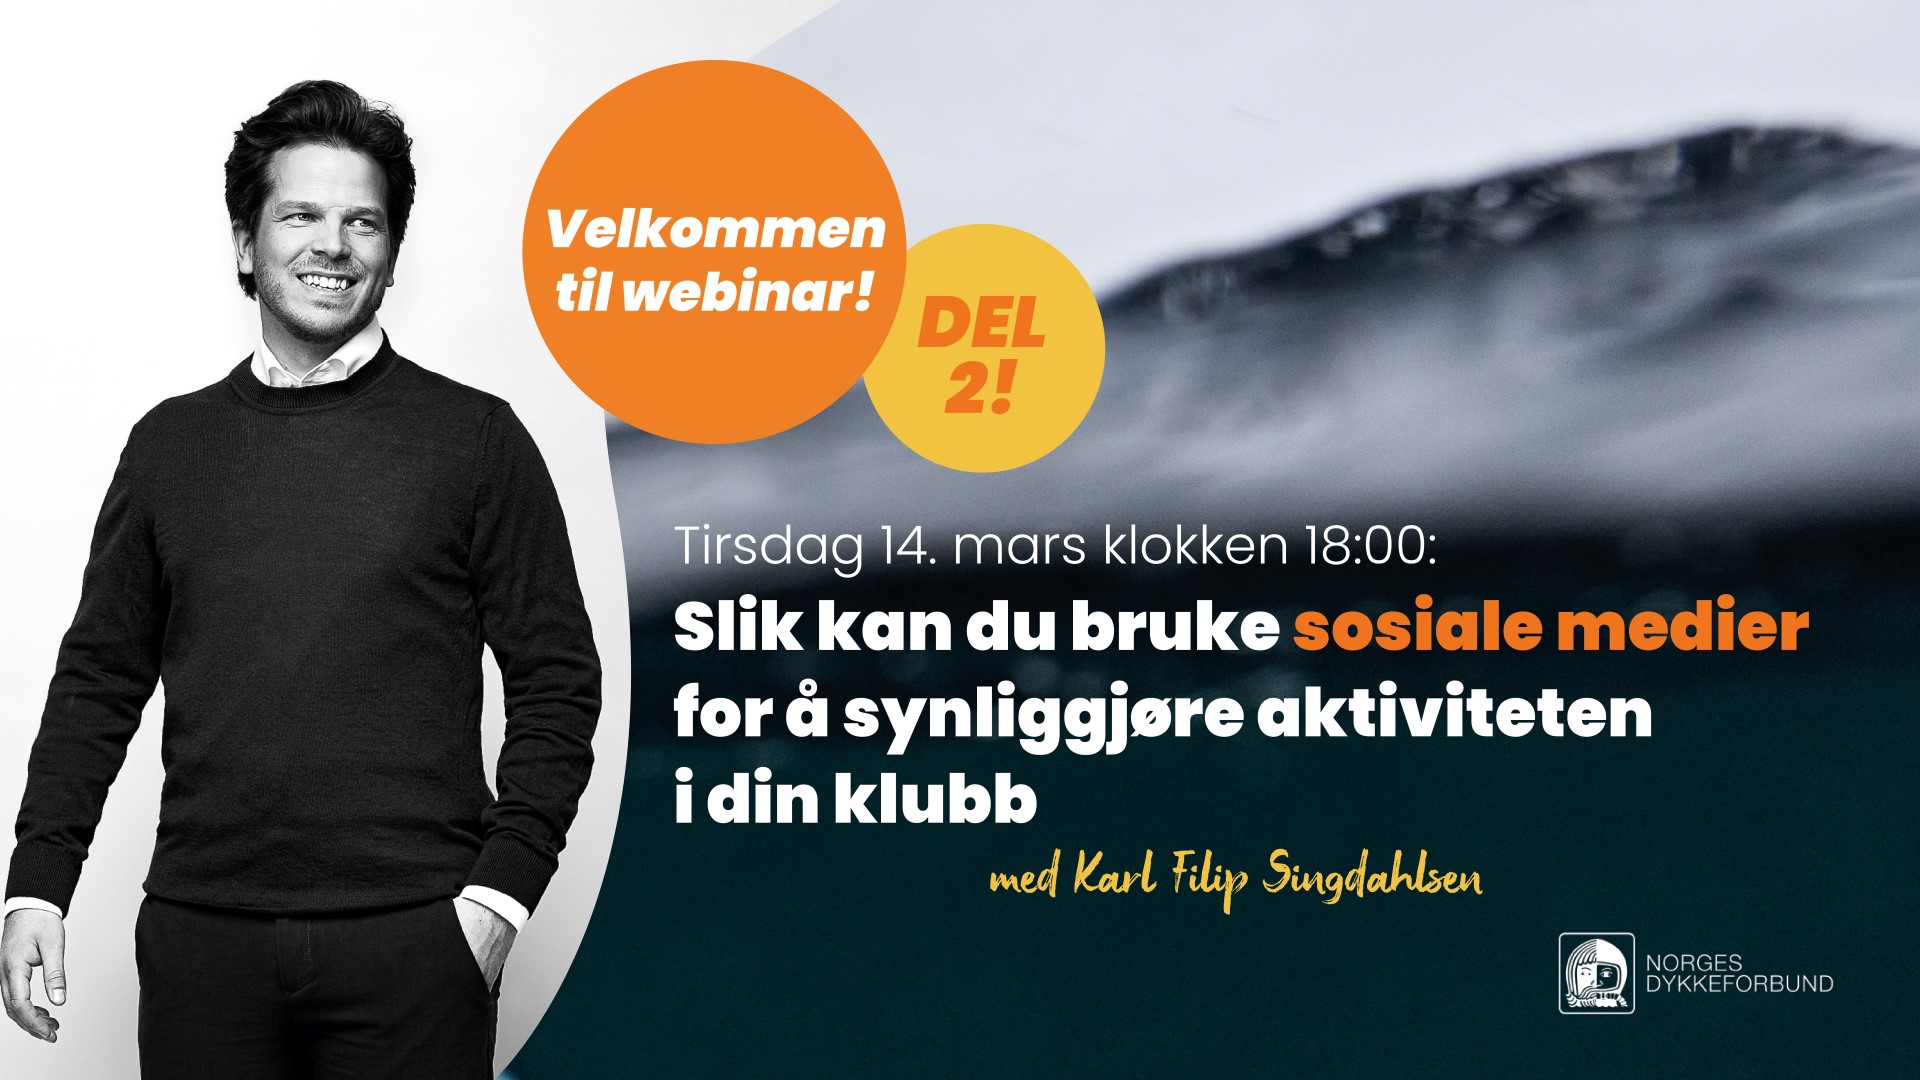 Karl Filip Singdahlsen holder webinar om sosiale medier for klubber og medlemmer av NDF, tirsdag 14. mars klokken 18:00. Dette er del 2 av webinaret. 